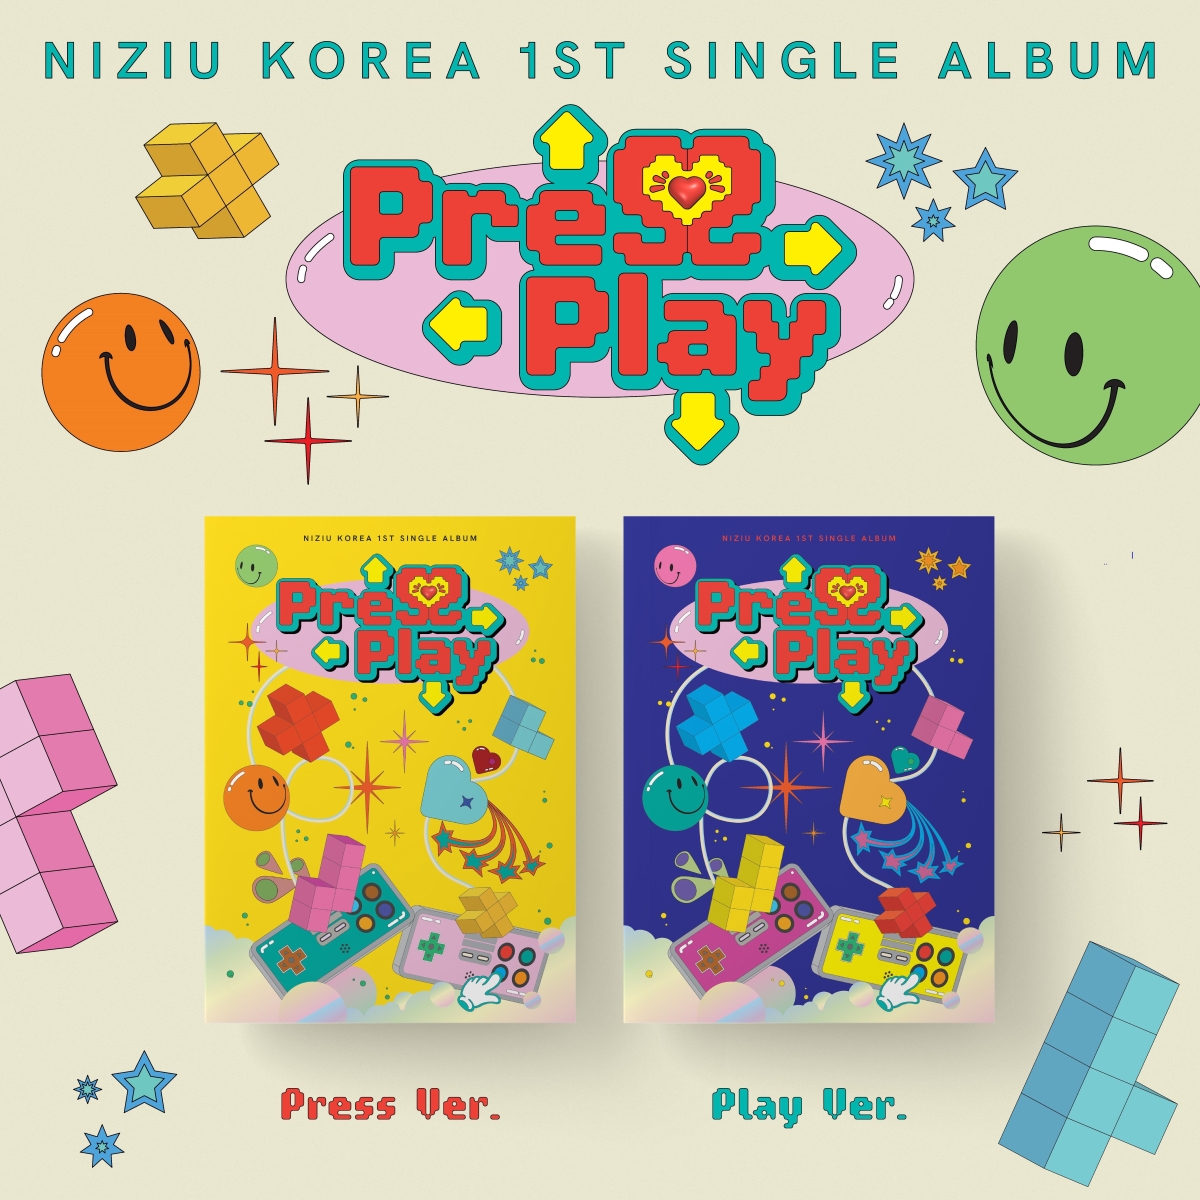 【先着特典】NiziU Korea 1st Single Album『Press Play』(Press Ver.&Play Ver.セット)(オフラインイベント応募抽選用シリアルナンバー入りチラシ(2枚)+予約販売特典ポスター2枚(両バージョン各1種))画像